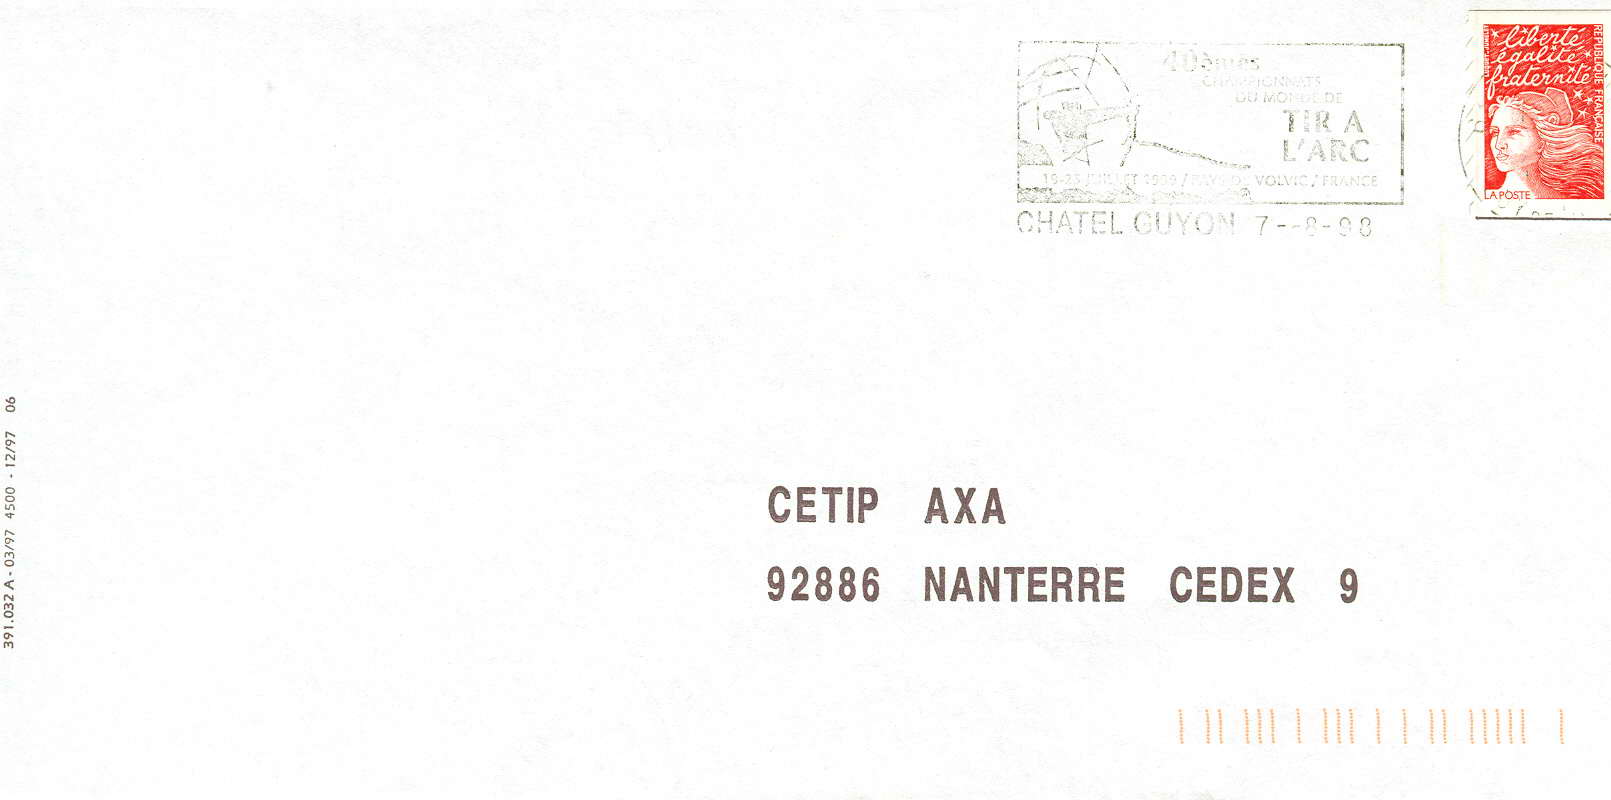 FRANCE OBLITERATION TEMPORAIRE 1998  CHATEL GUYON CHAMPIONNATS DU MONDE DE TIR A L'ARC - Archery